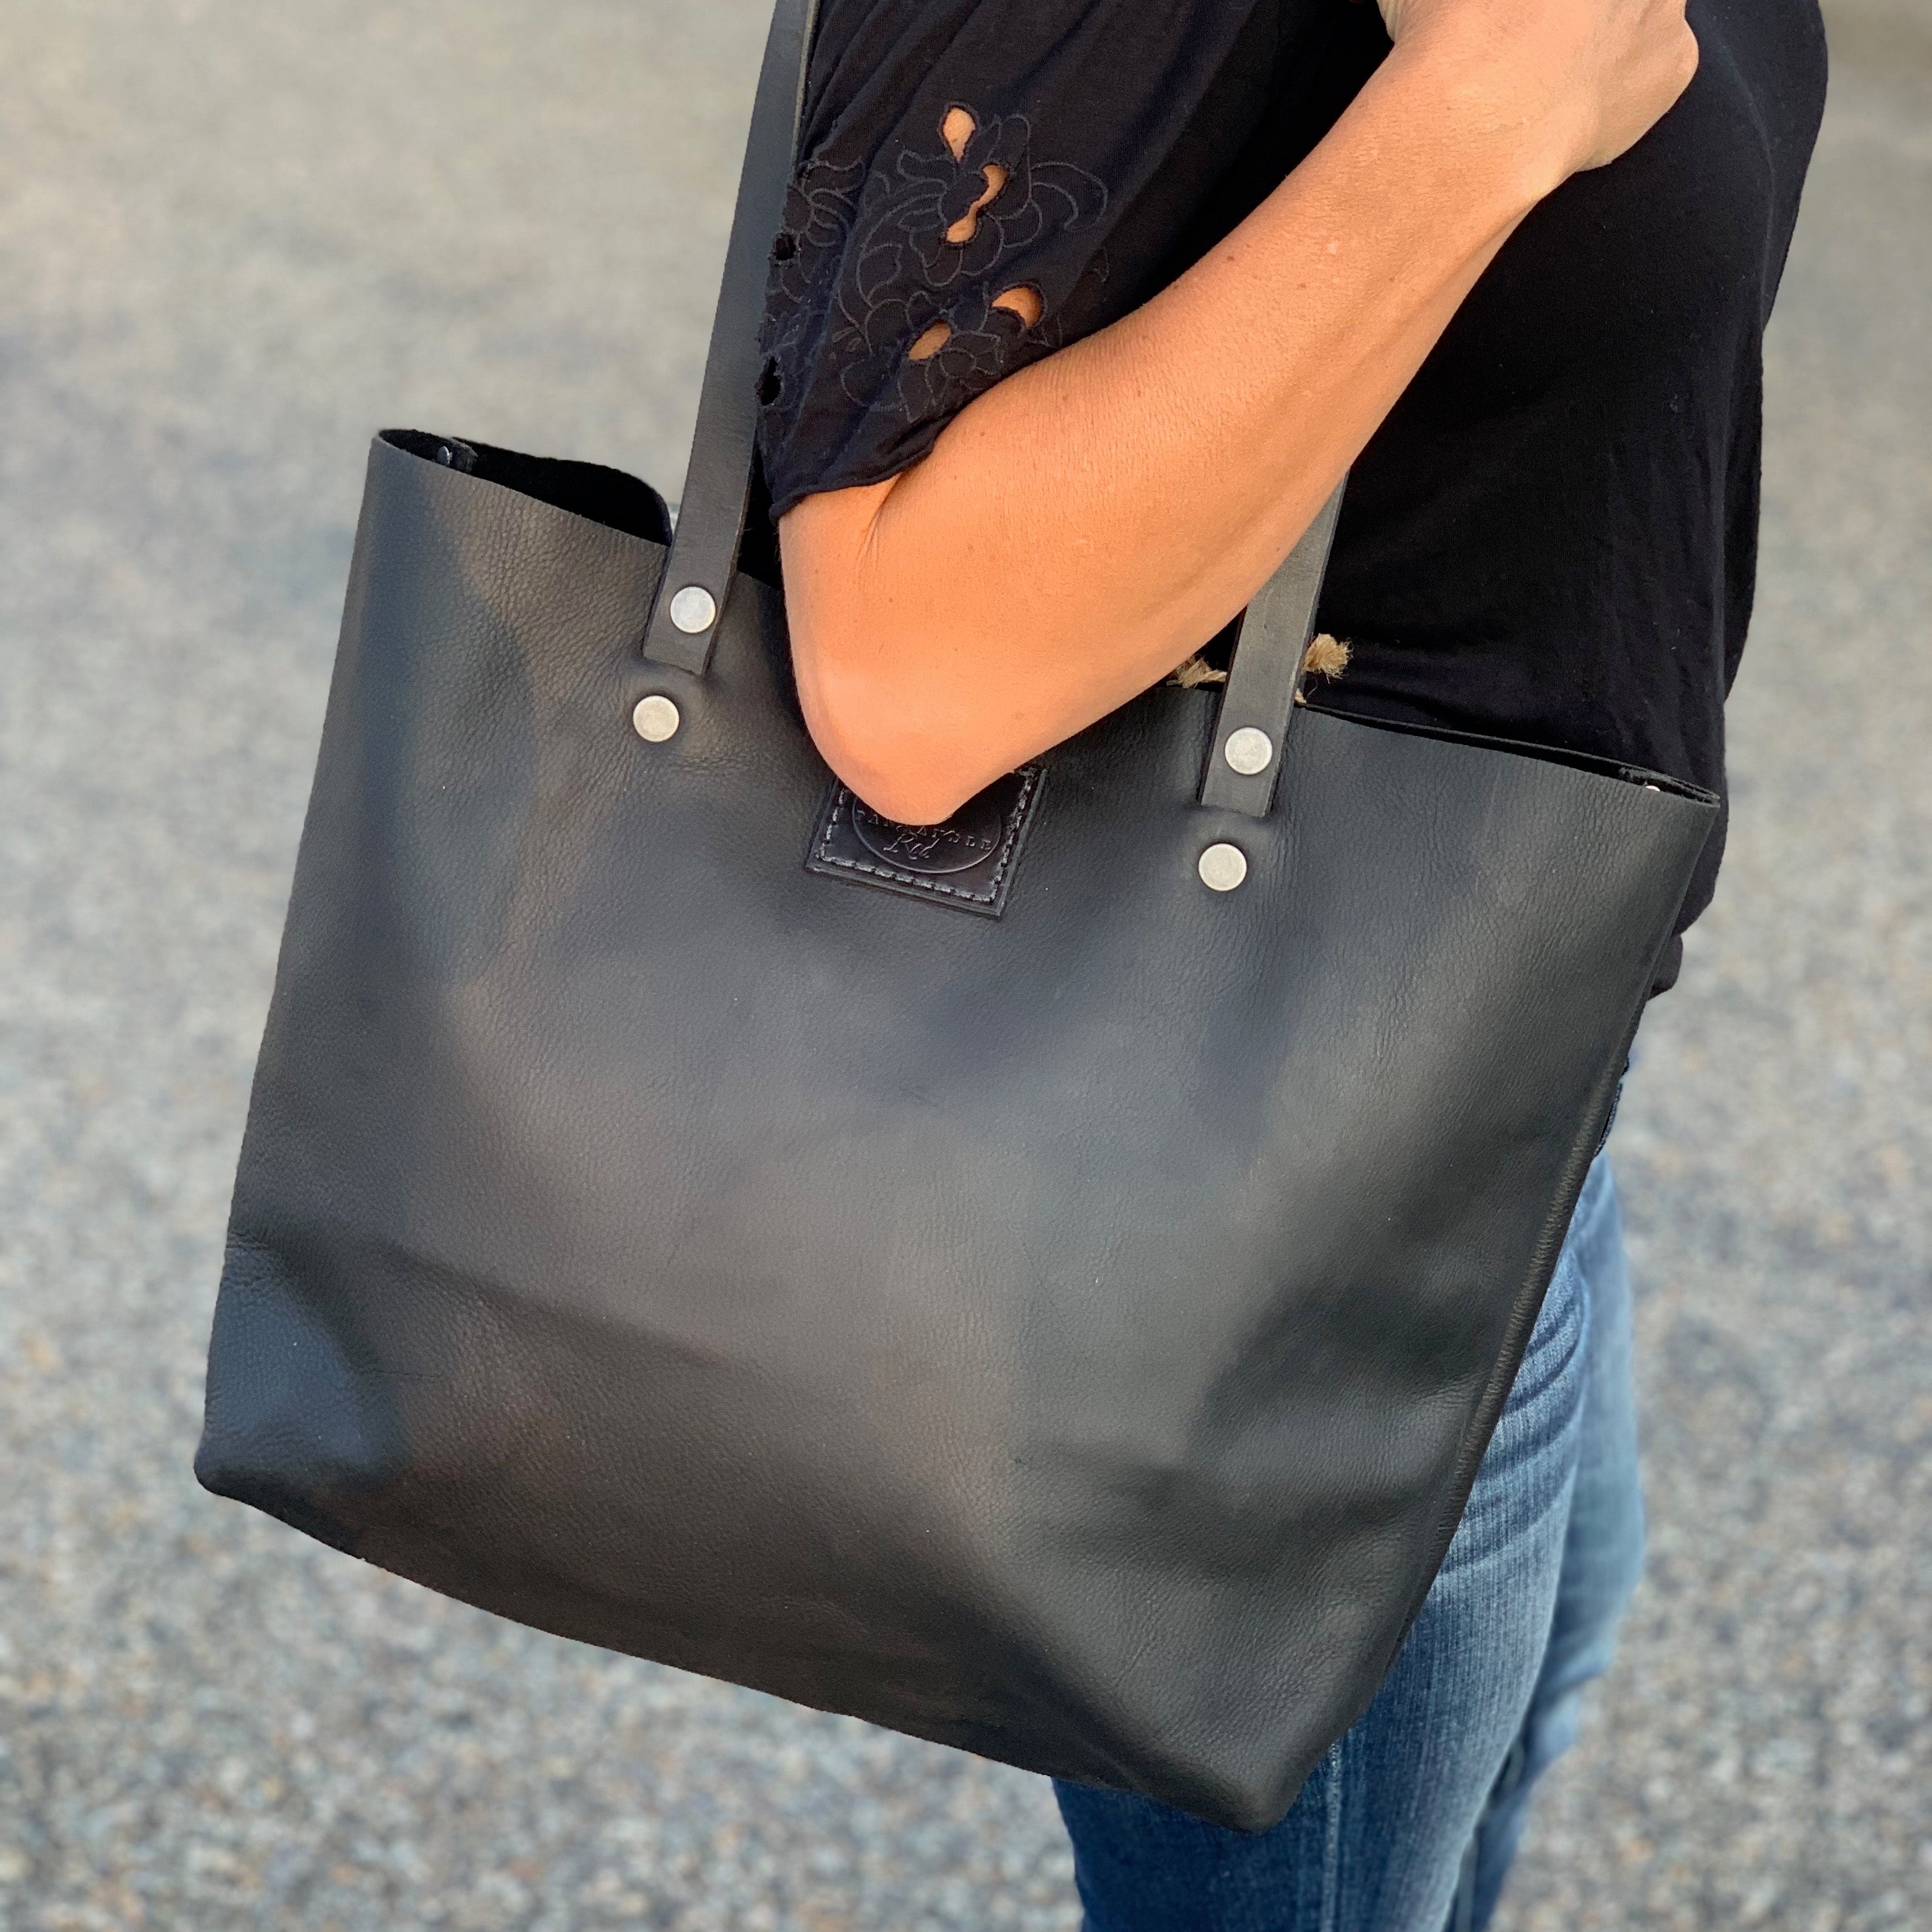 Black Leather Bag, Black Bag, Black Purse, Black Leather Tote Bag, Purses, Travel Bag, Gift Shop, Panhandle Red Leather Company, Panhandle Red, Leather Goods 